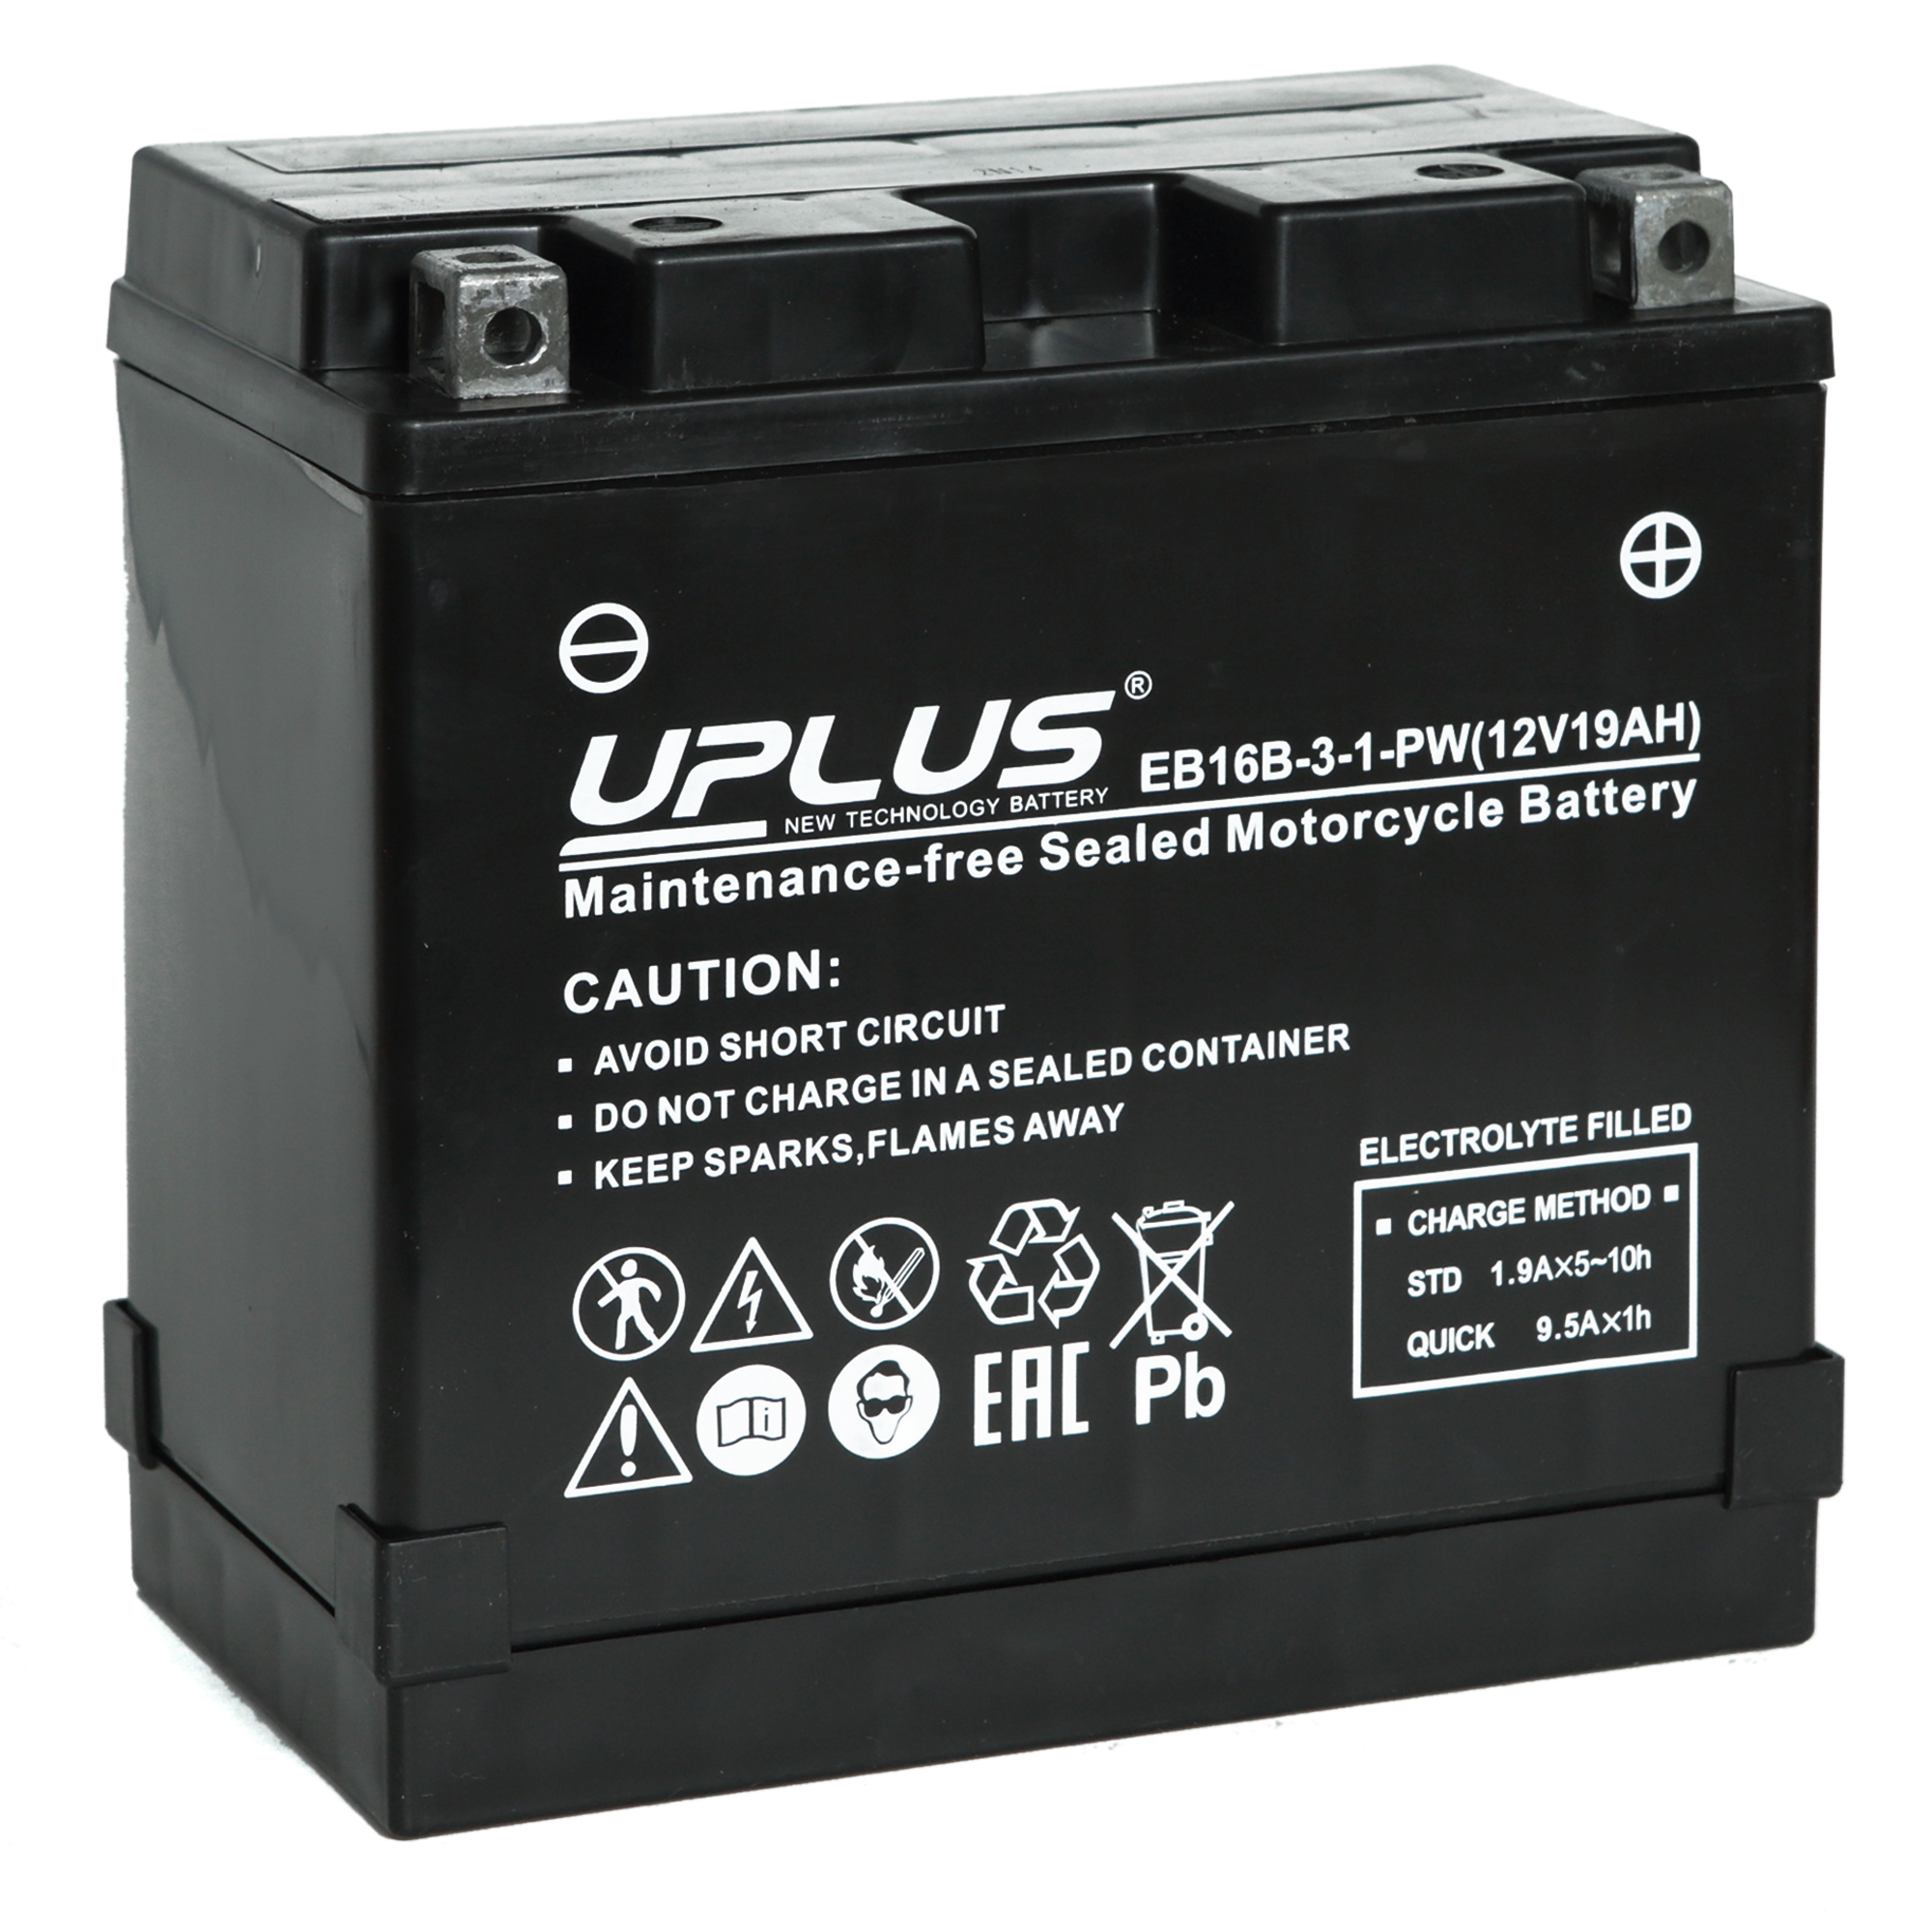 Мотоциклетная аккумуляторная батарея UPLUS High Performance  EB16B-3-1-PW, 19 Ач, 0/1